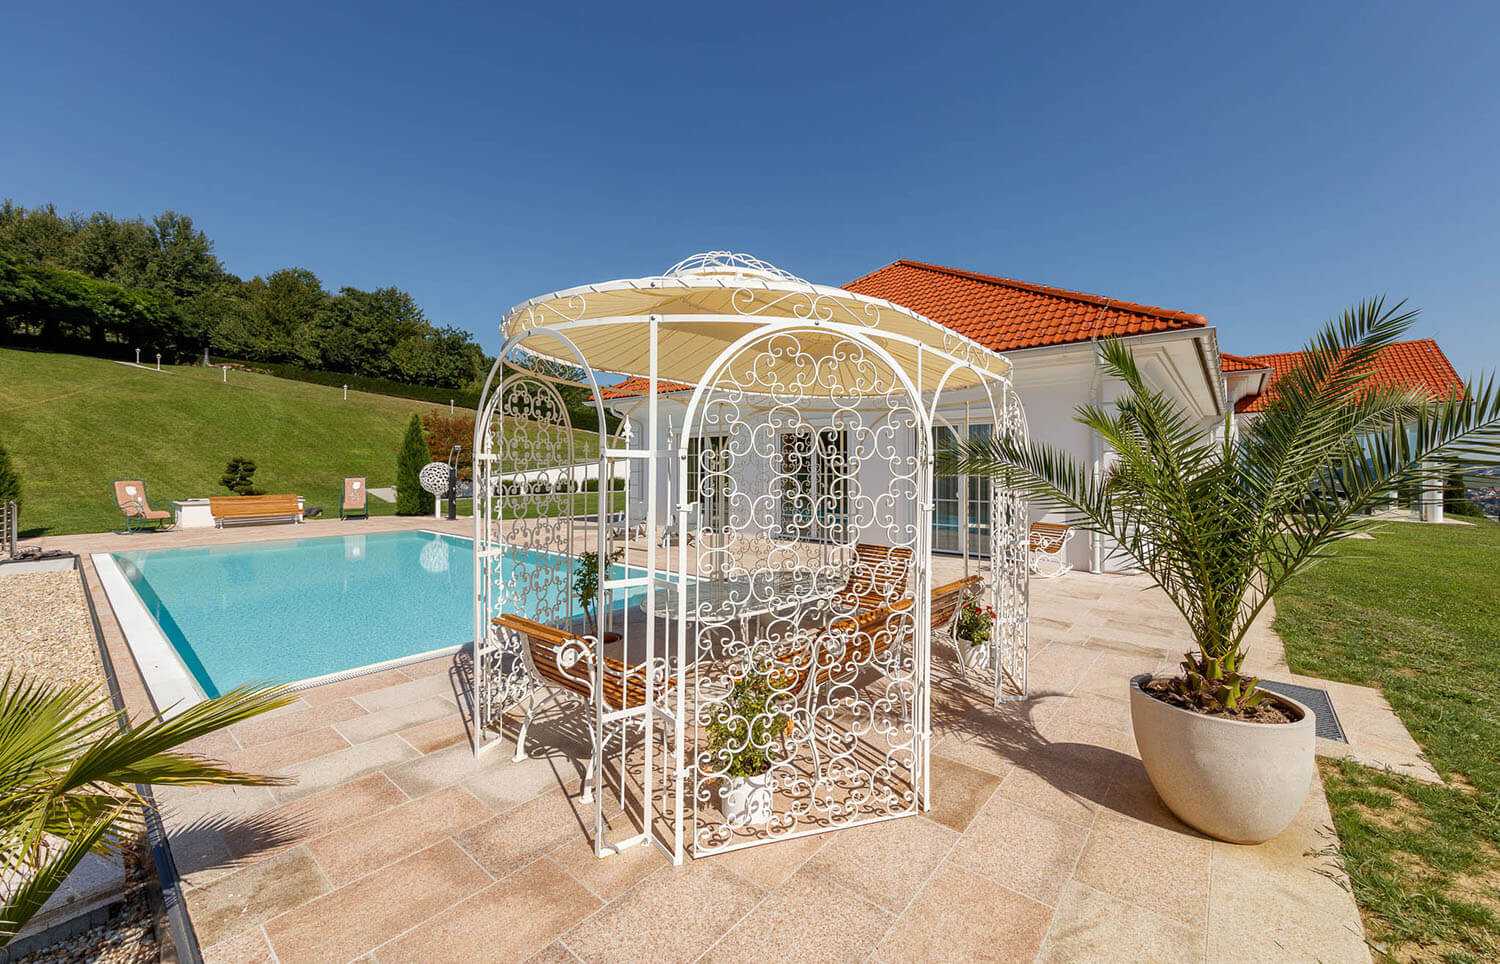 Pavillon Verona in pulverbeschichteter Sonderfarbe mit Sonnensegel und Rankgitter vor modernen Pool